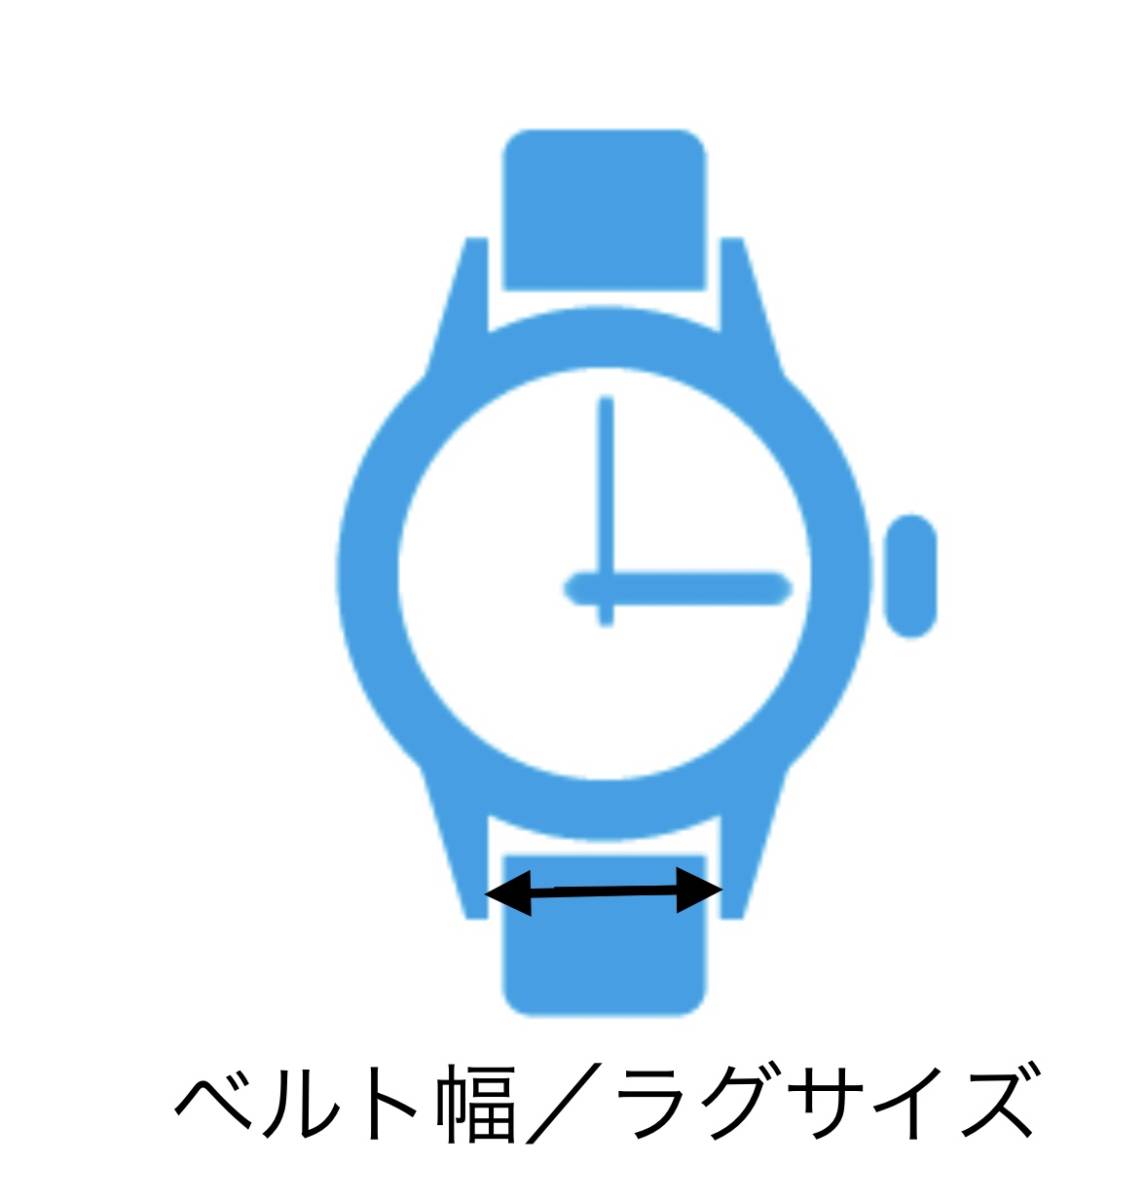  наручные часы spring палка spring палка 2 шт 10mm для 130 иен включая доставку быстрое решение немедленная отправка изображение 3 листов y